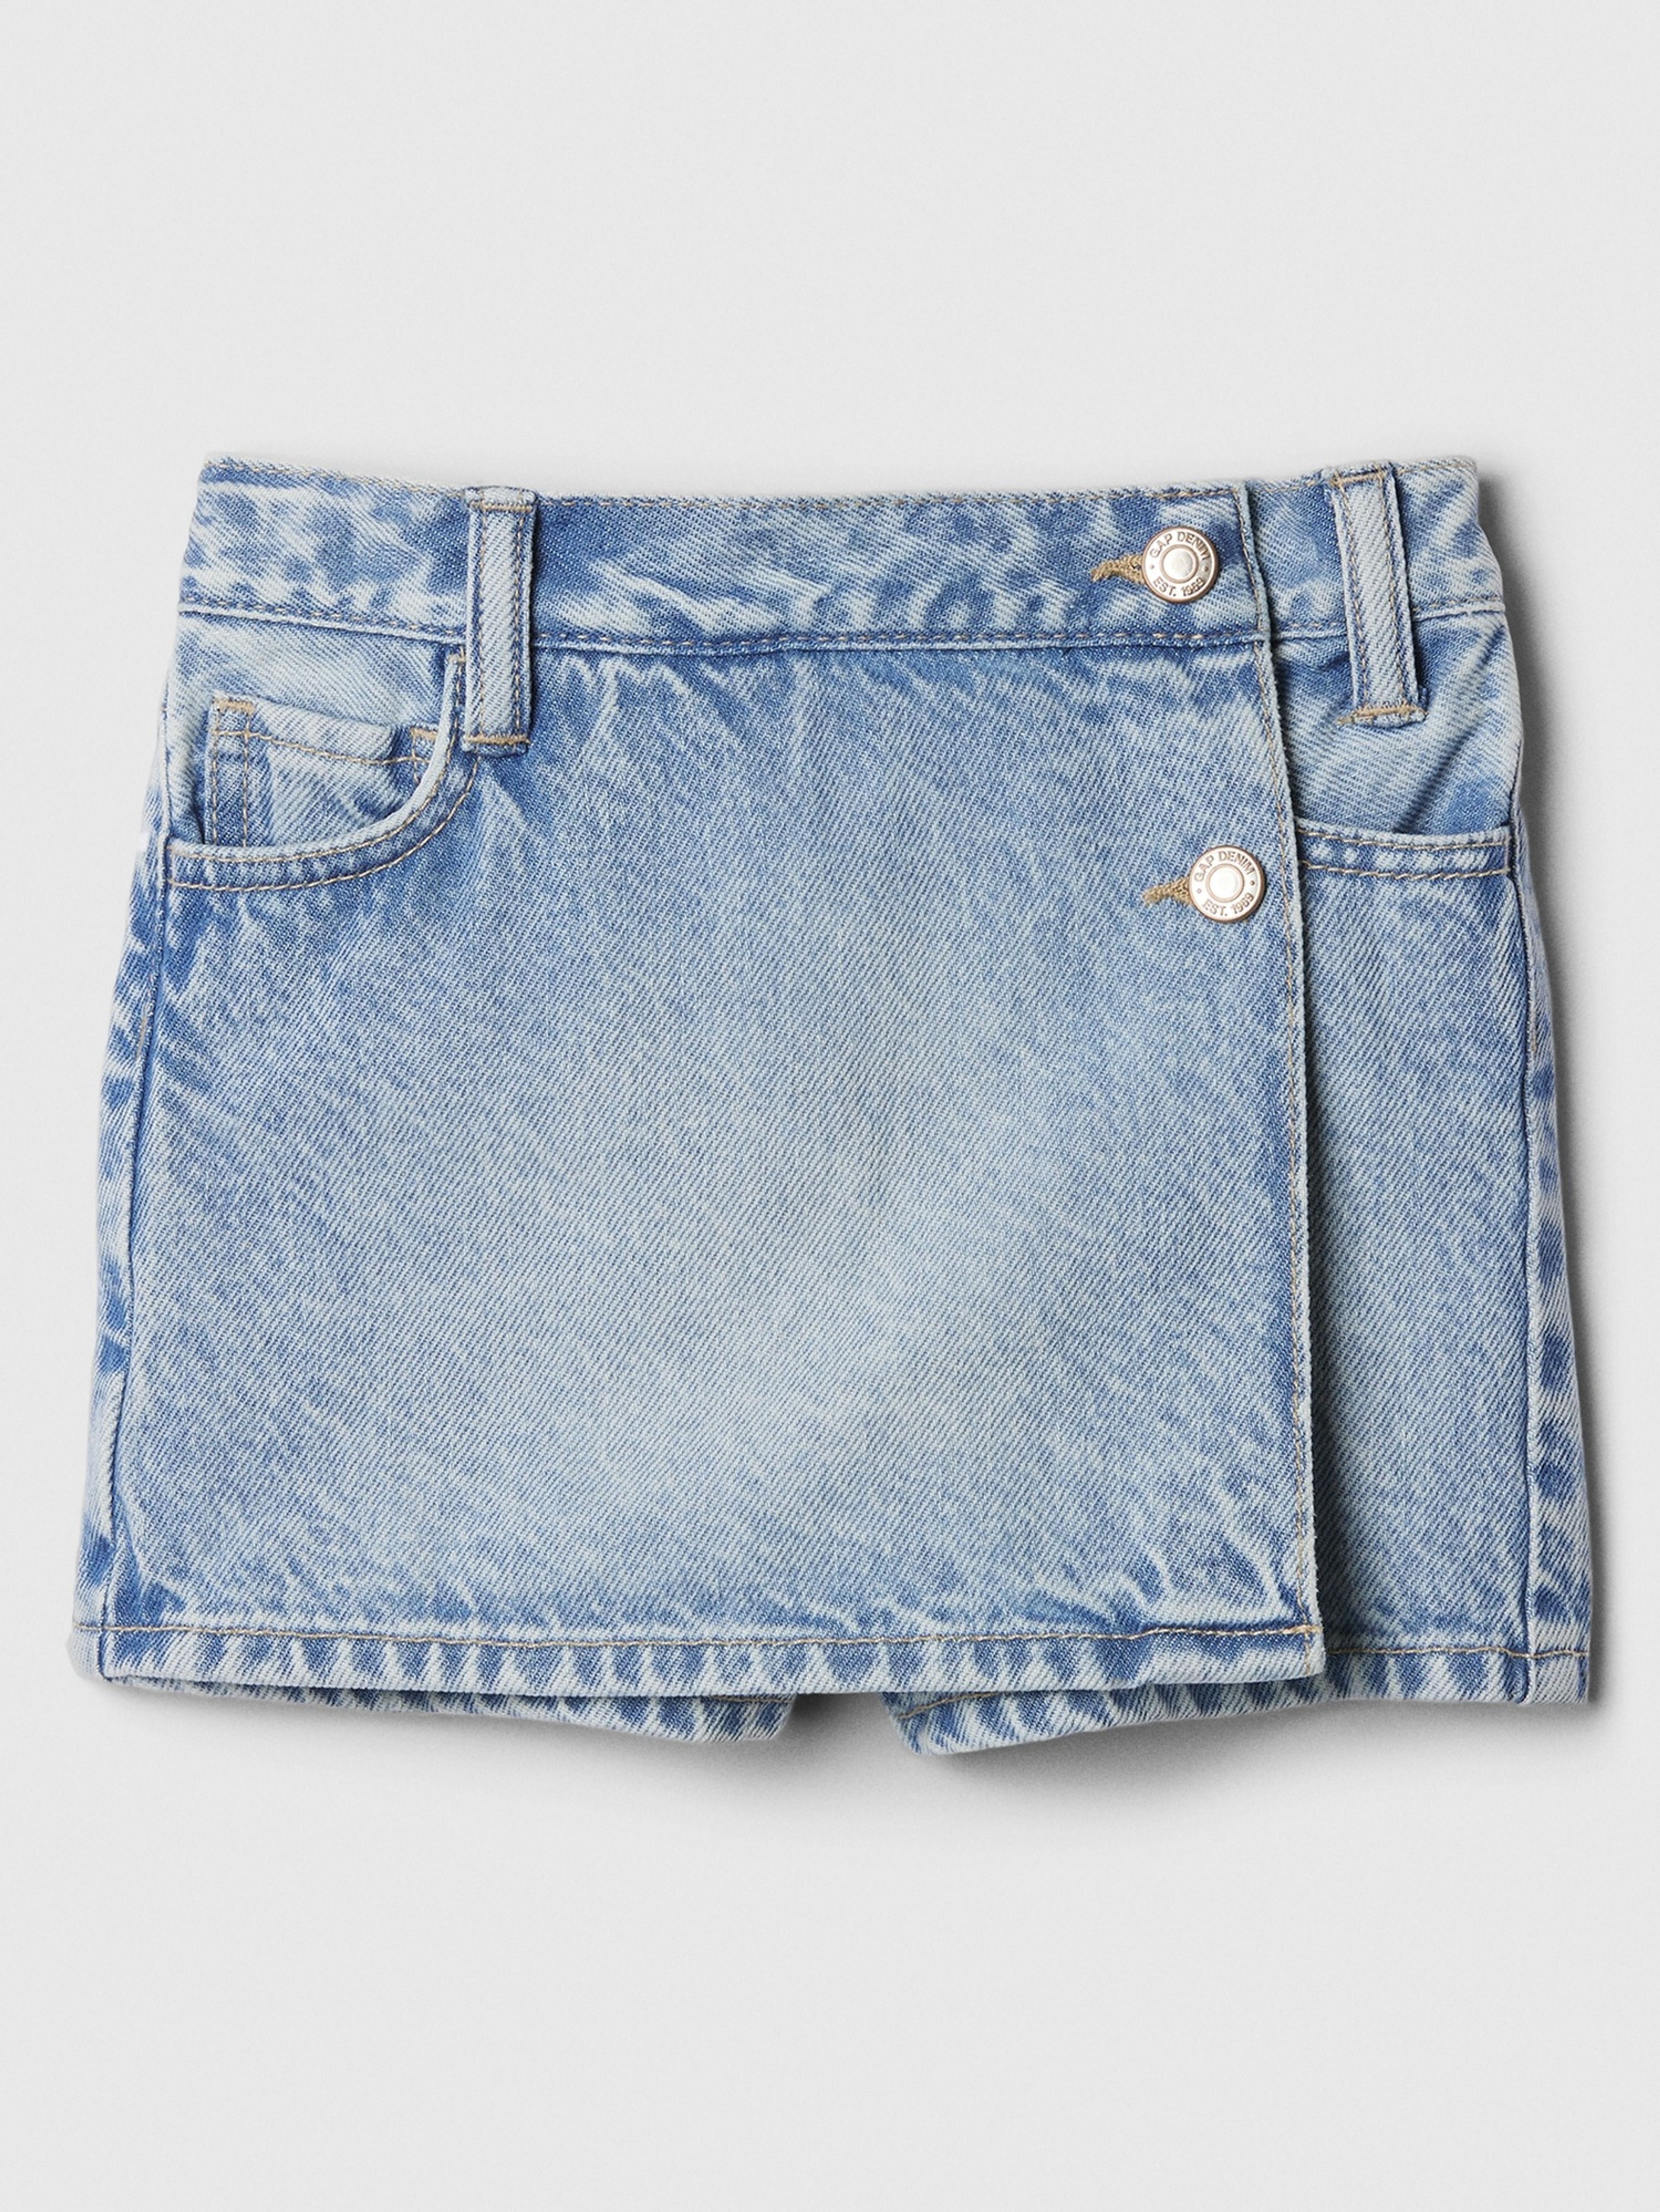 Kinder-Jeans-Shorts-Rock